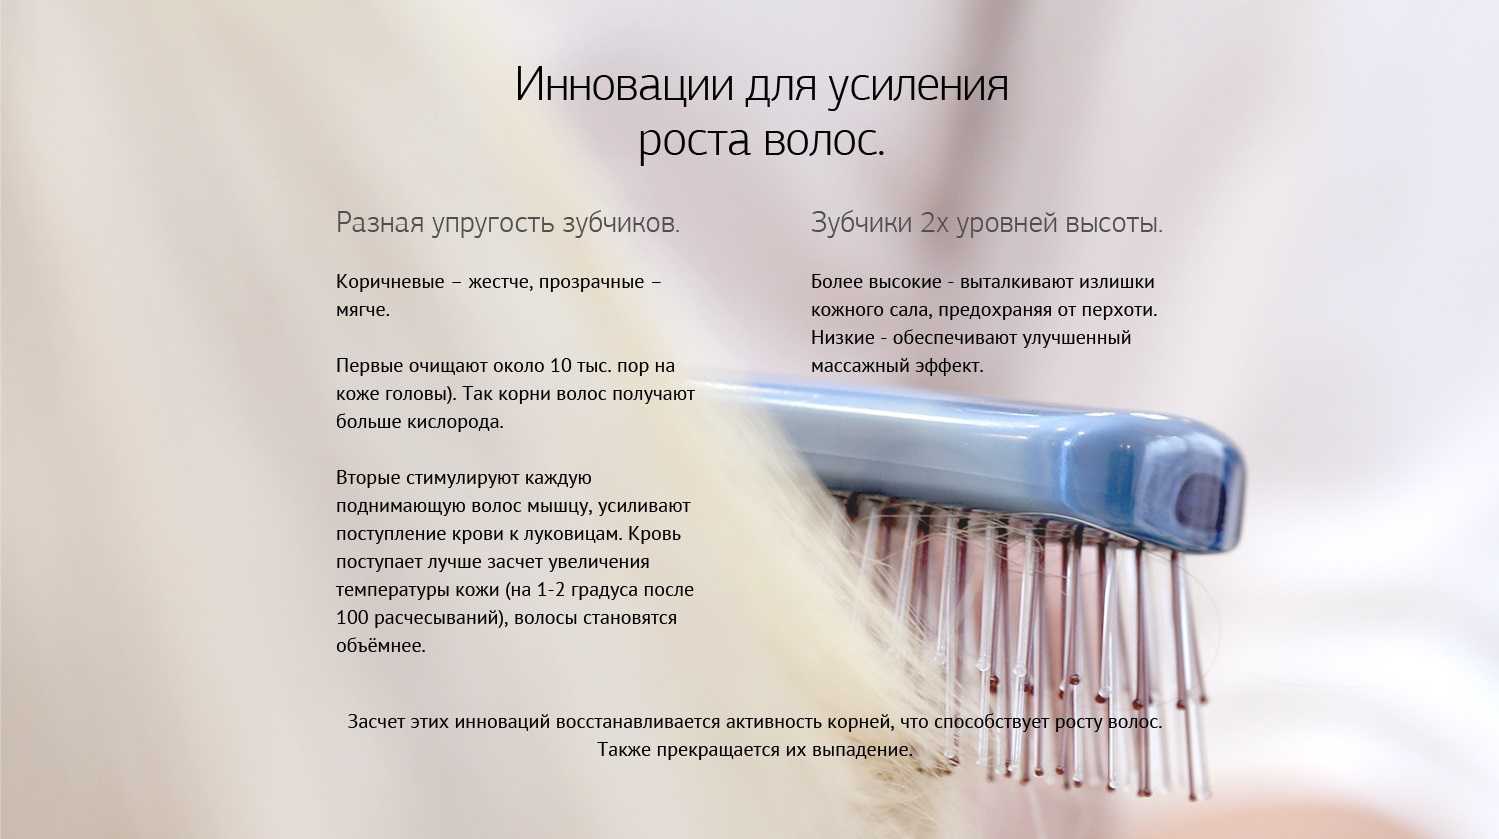 Топ-6 лазерных расчесок для укрепления волос • журнал nails